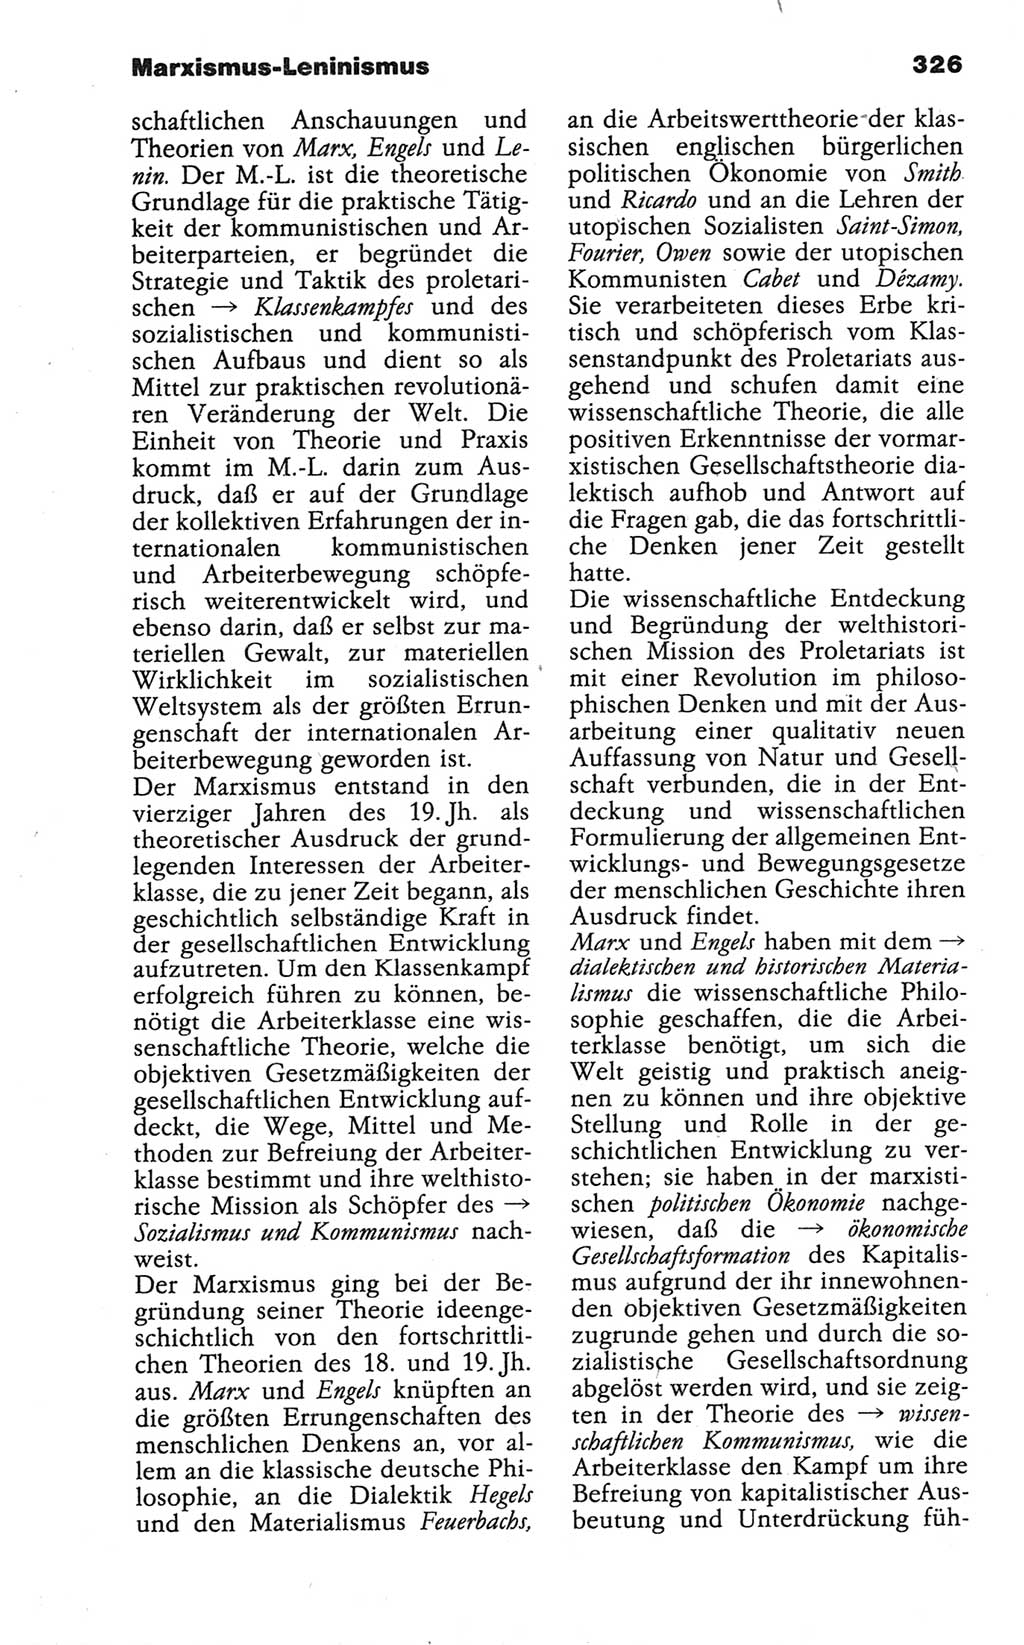 Wörterbuch der marxistisch-leninistischen Philosophie [Deutsche Demokratische Republik (DDR)] 1986, Seite 326 (Wb. ML Phil. DDR 1986, S. 326)